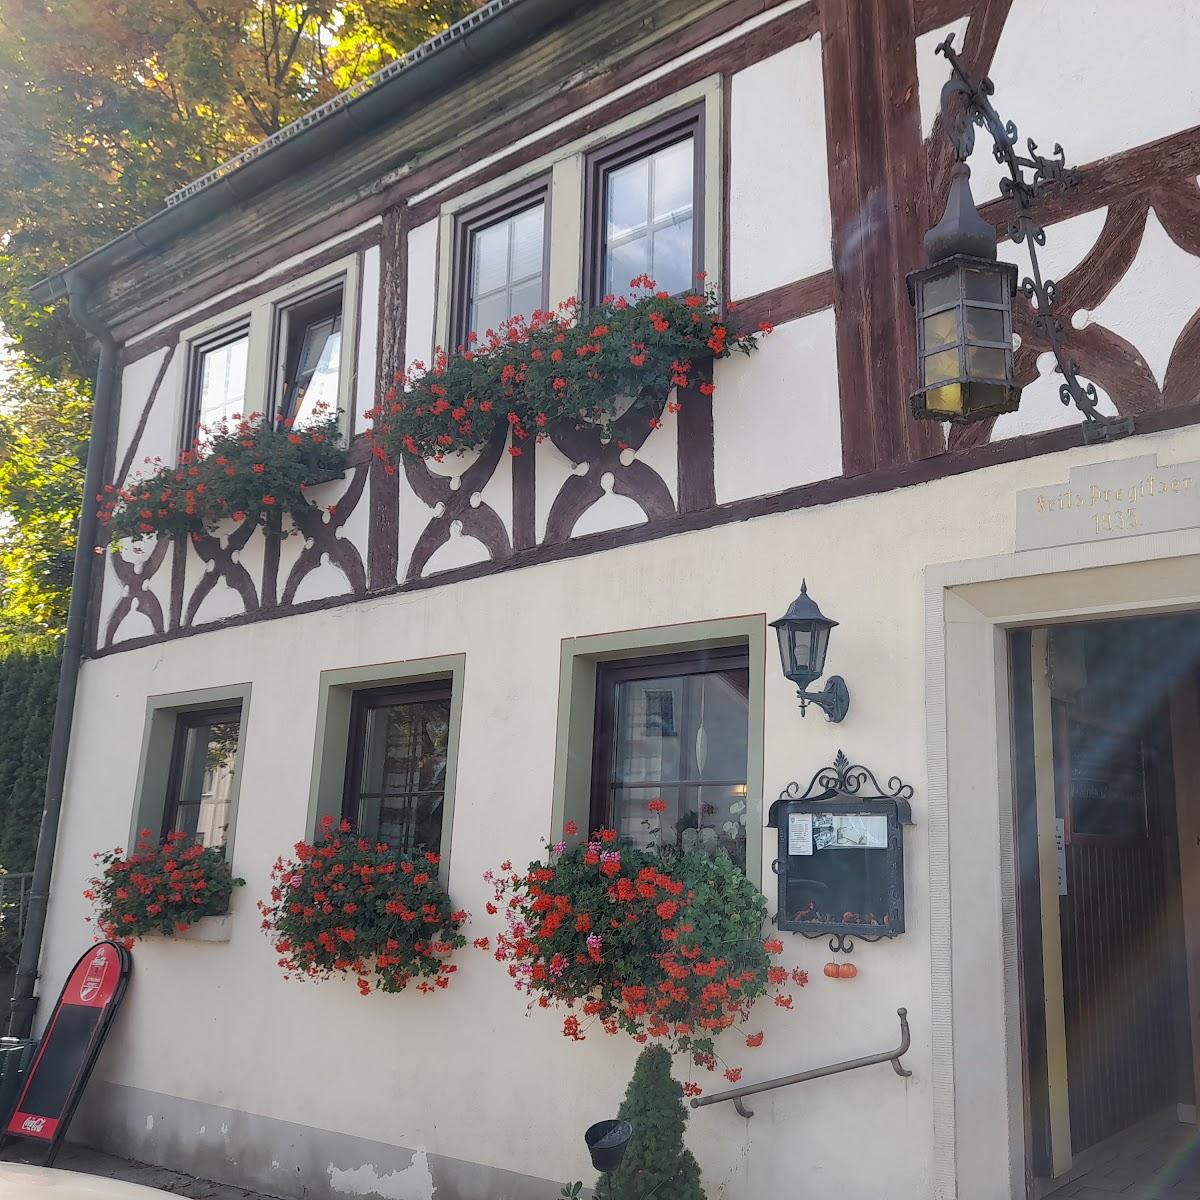 Restaurant "Landgasthof zum Rappen" in Oberickelsheim